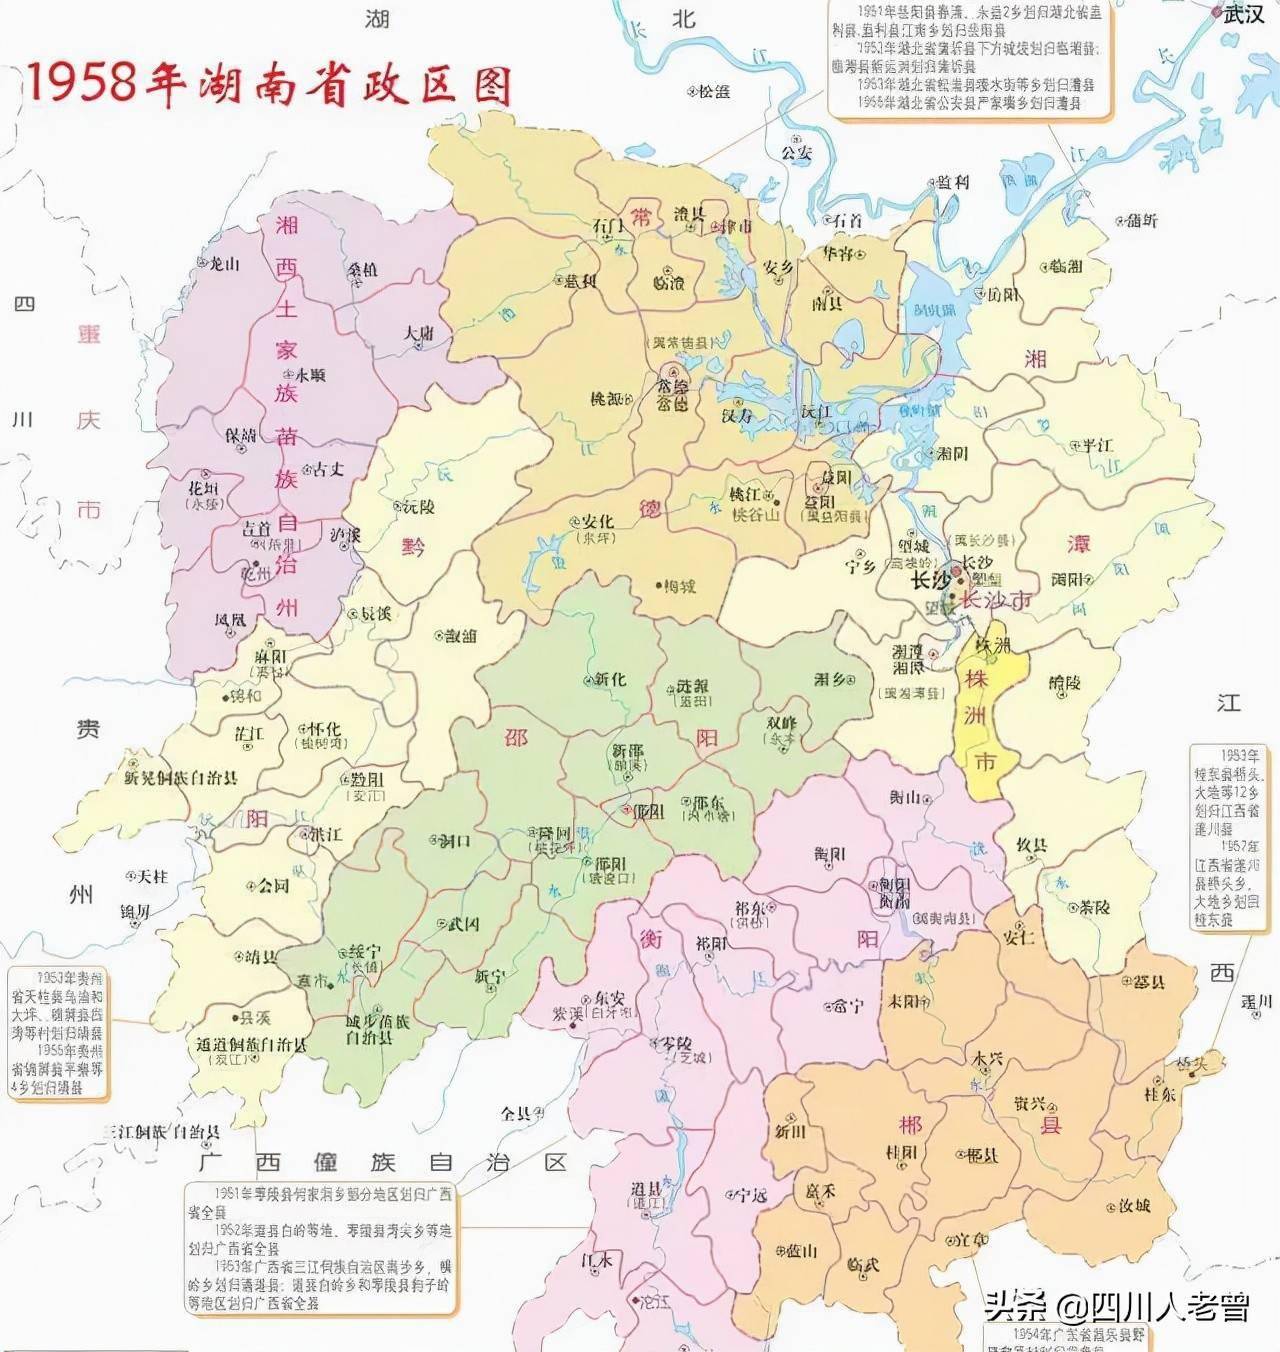 1949-1958年湖南省行政区划沿革中华民国时,湖南废除府,厅,州,保留道